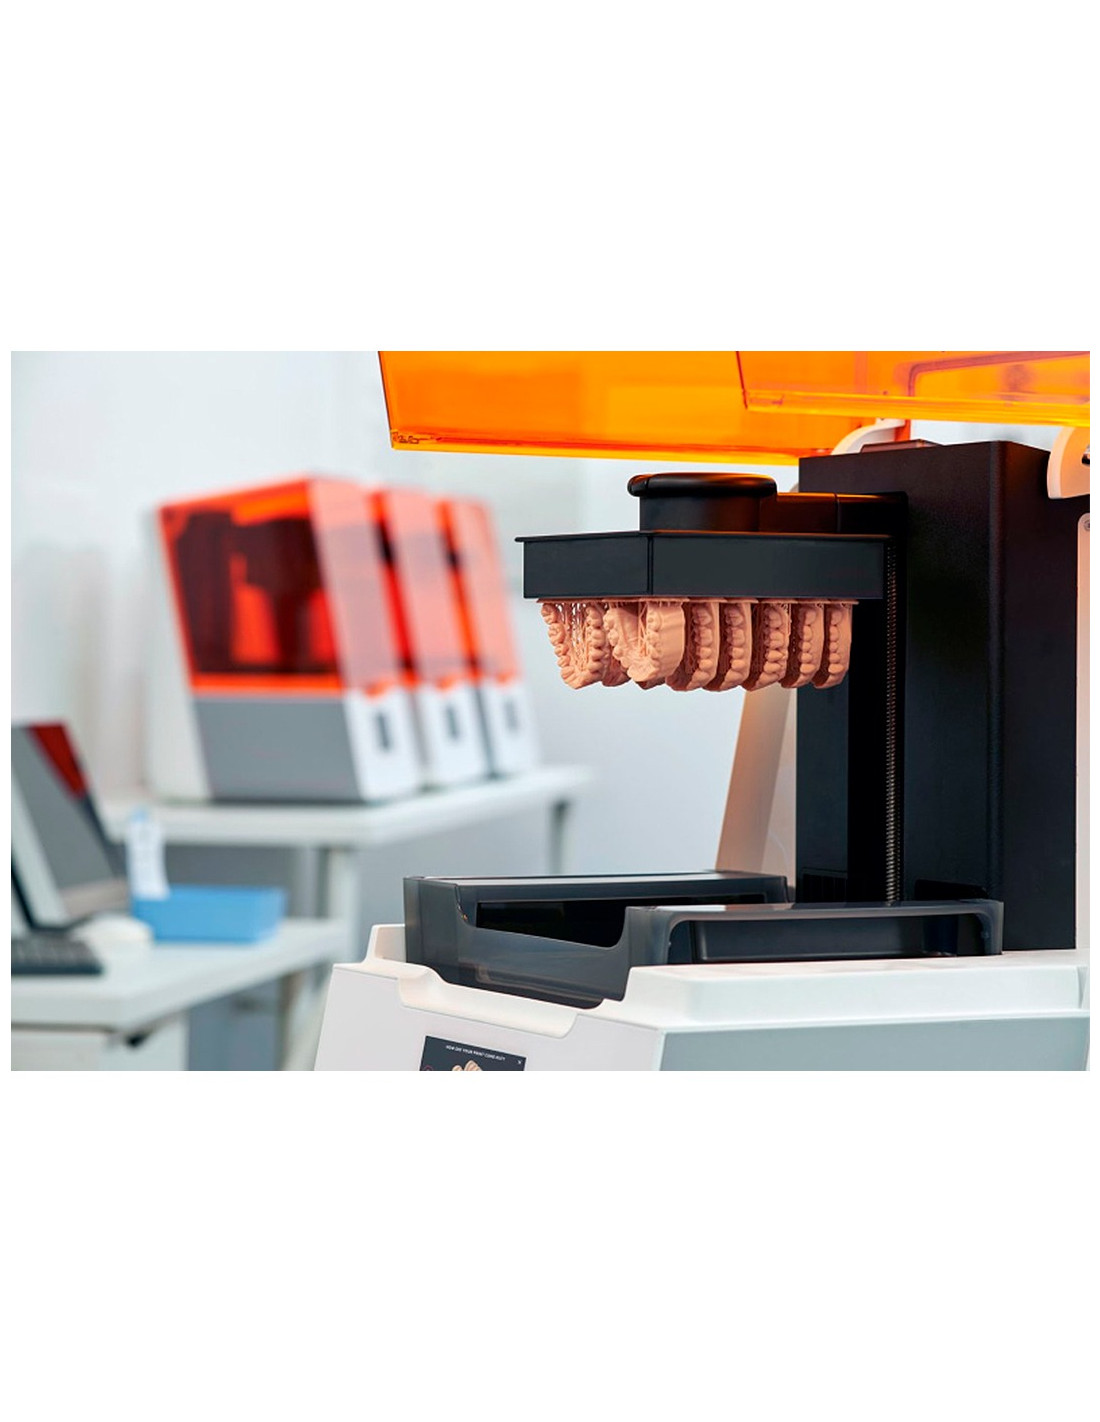 Impressora 3D FormLabs Form 3B - embalagem básica